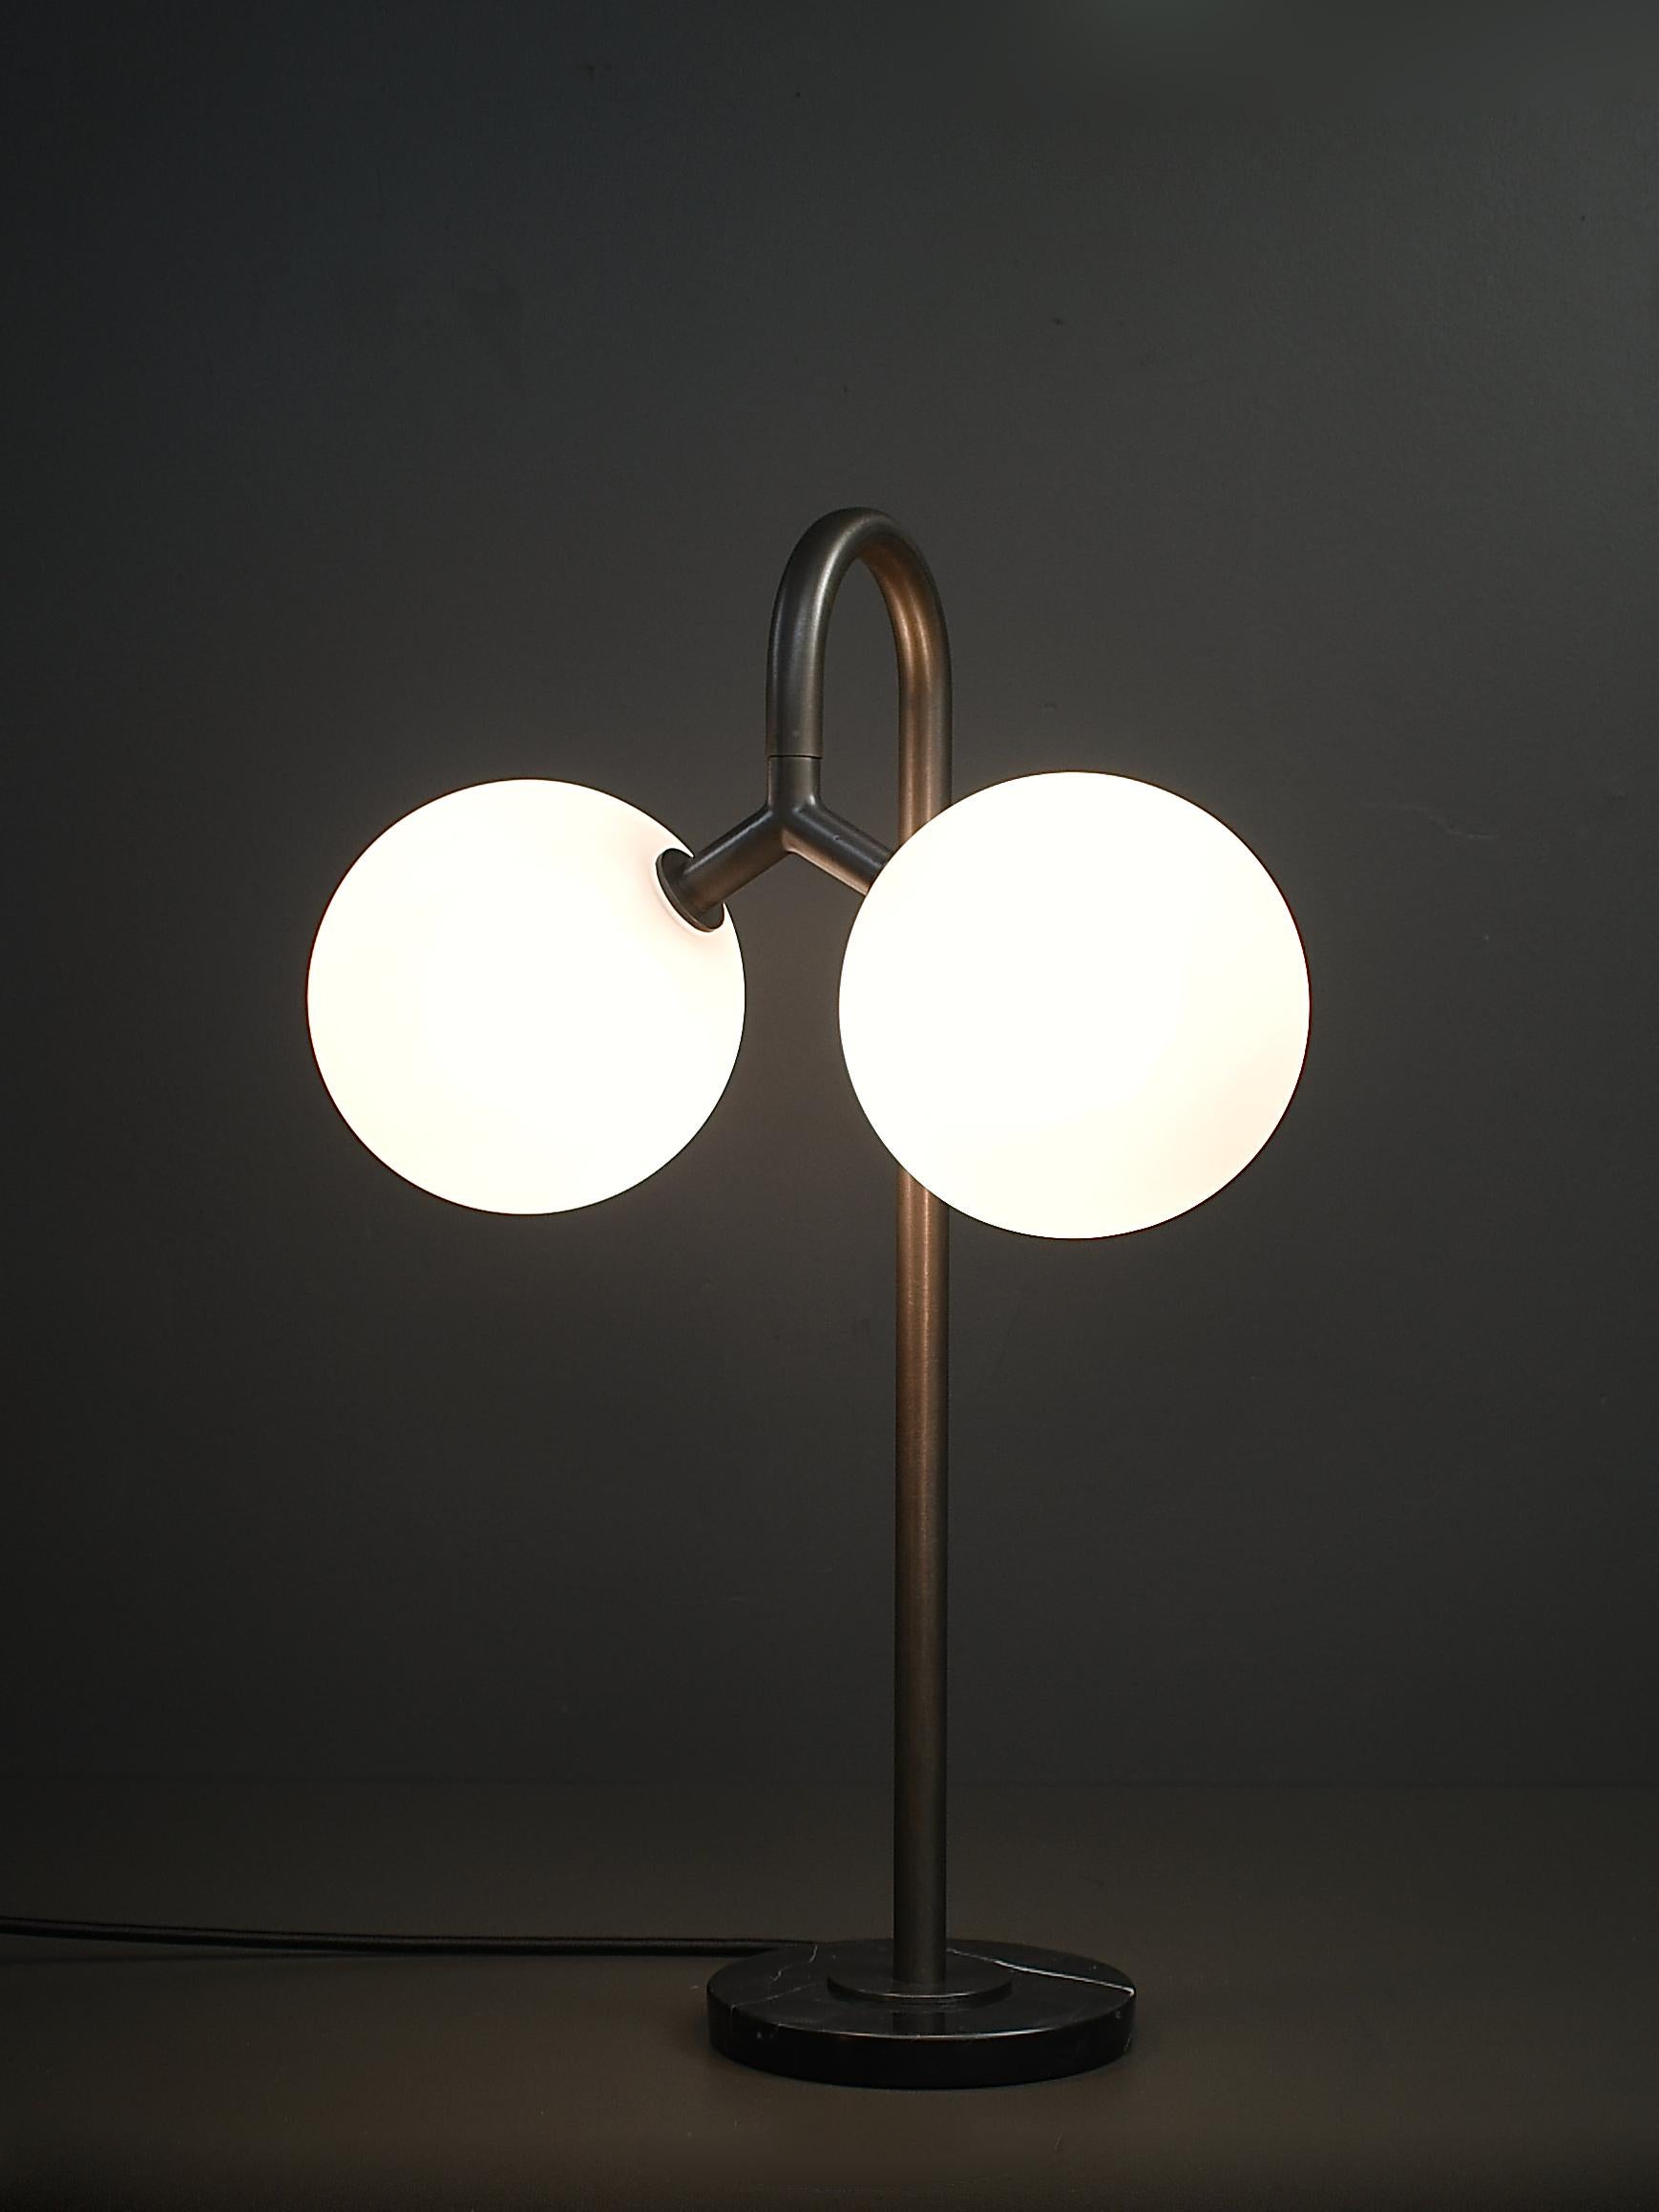 L'applique DUO, notre best-seller, est désormais disponible en tant que lampe de bureau ou de table ! Voici la lampe DUO de Blueprint Lighting, 2021. Une belle étude des lignes pures et des formes simples inspirées des principes du Bauhaus. DUO est